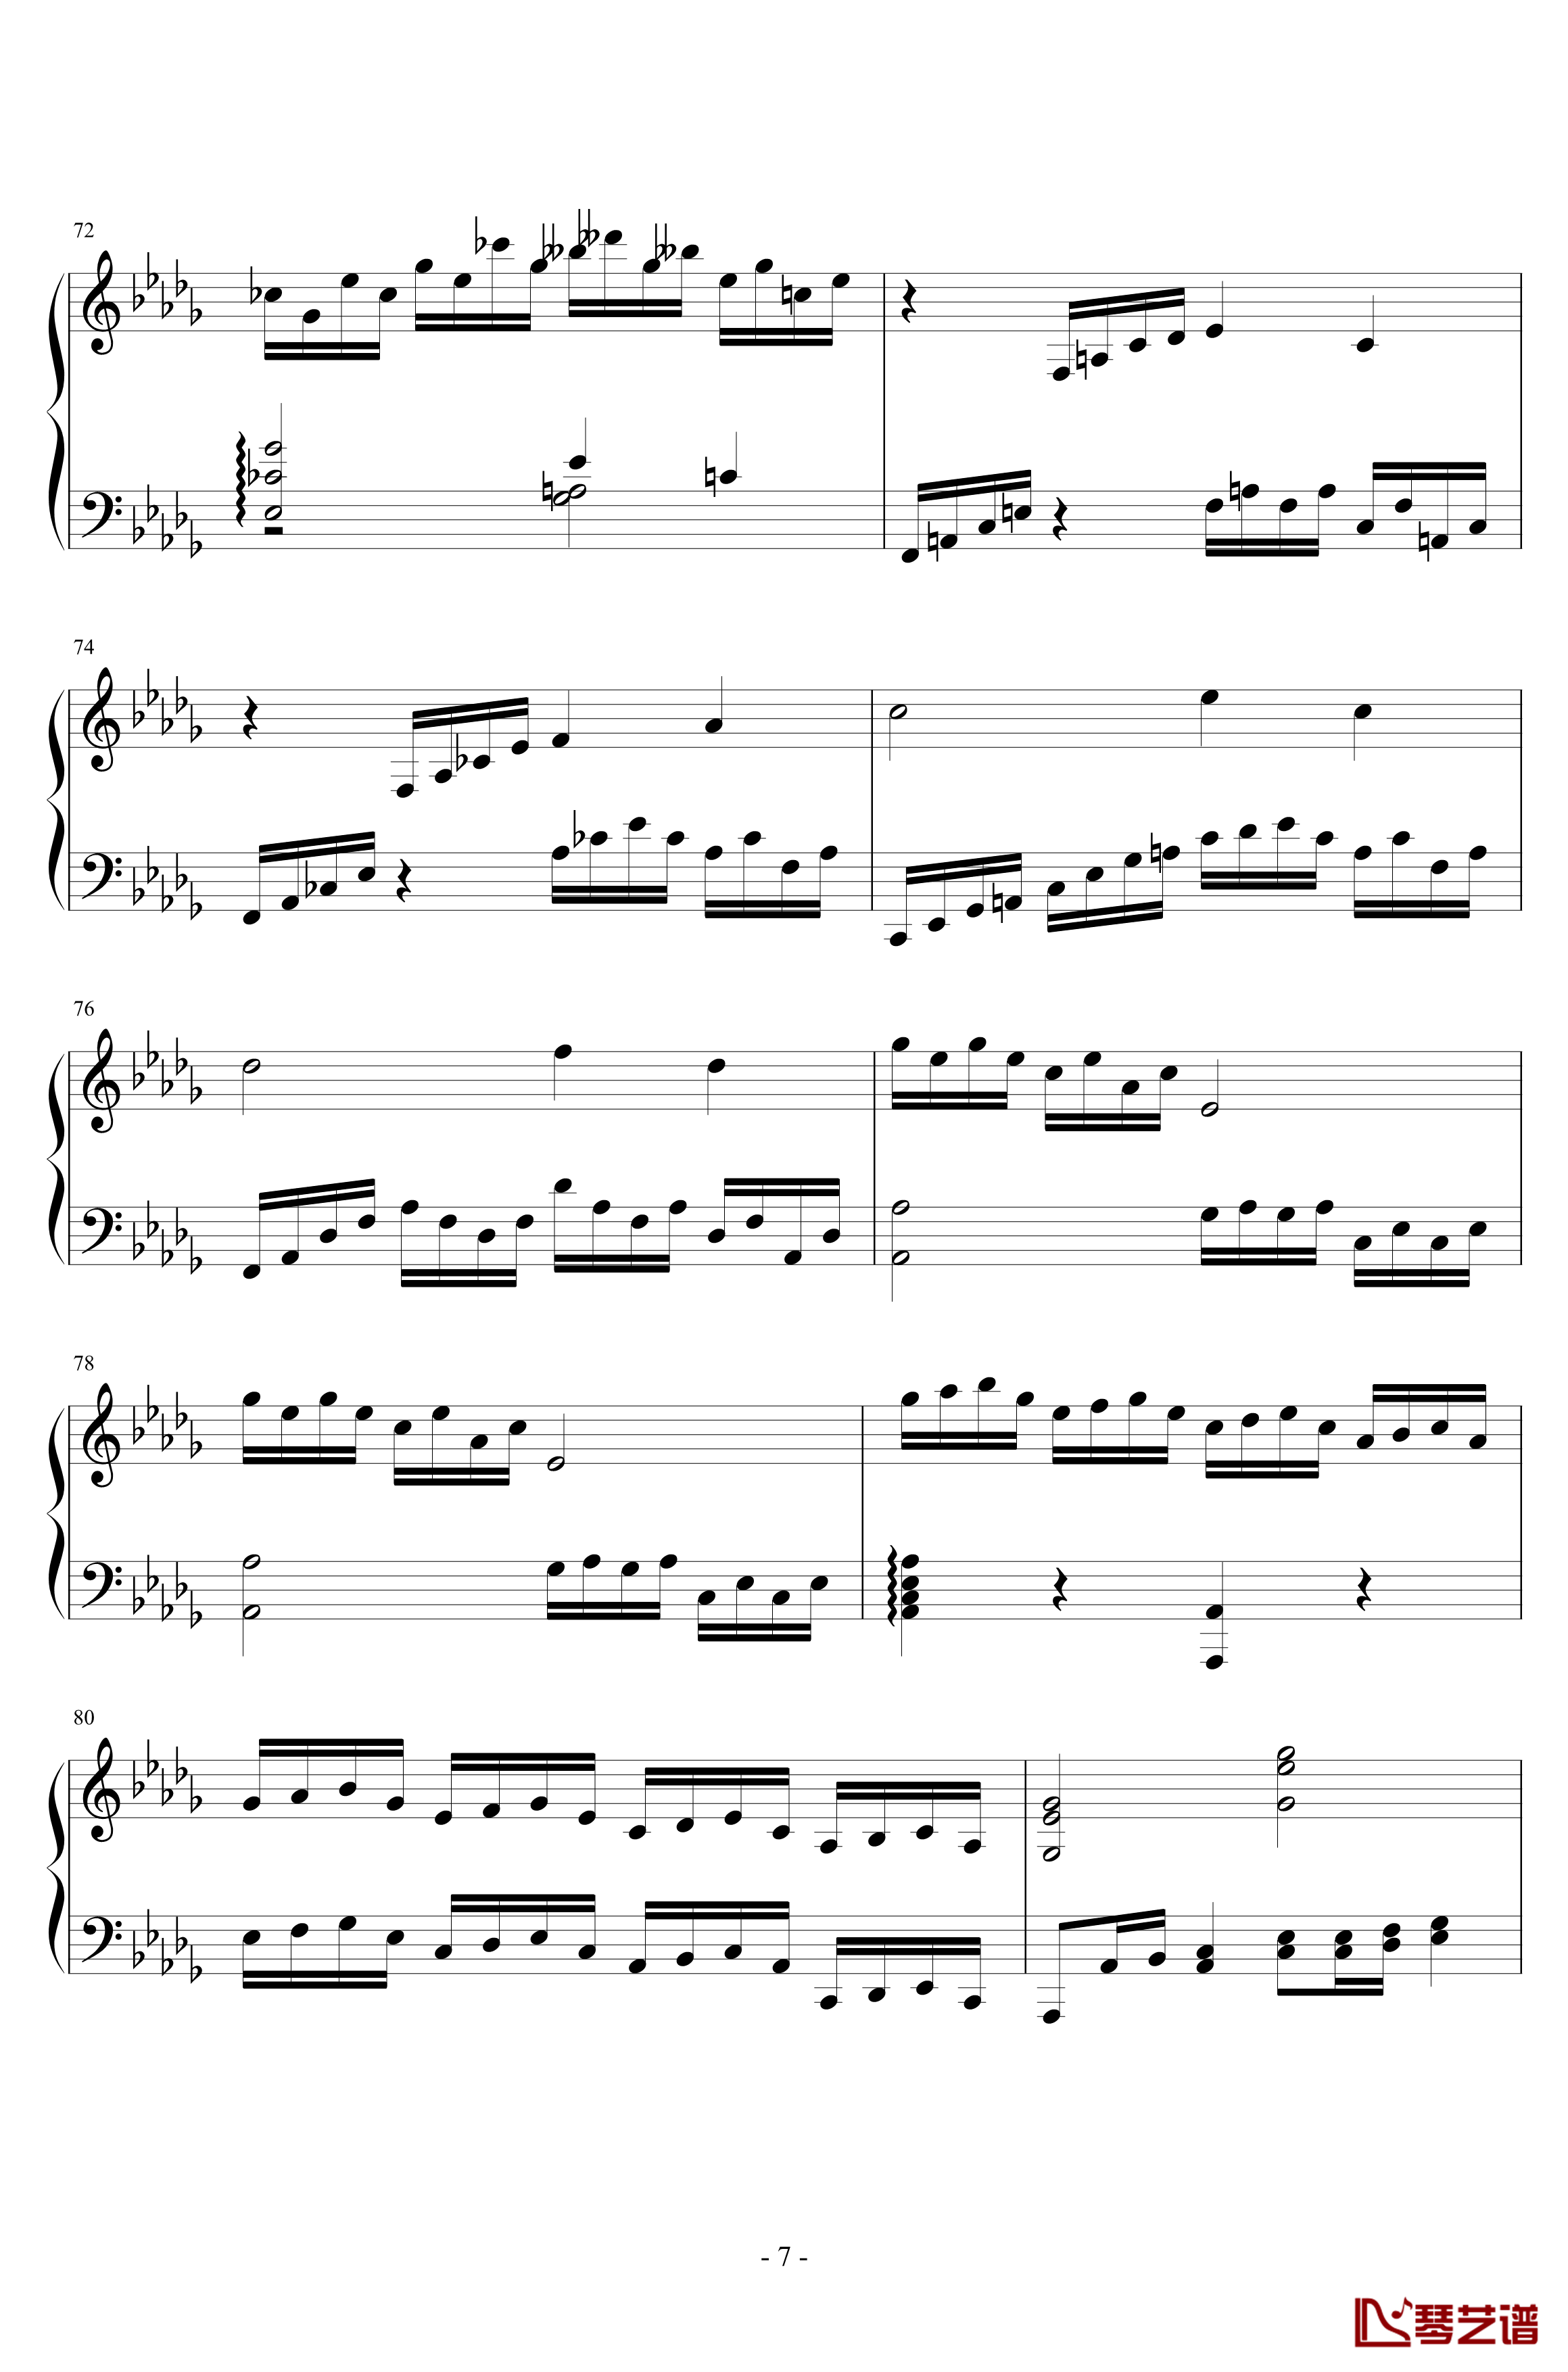 第二钢琴奏鸣曲第一乐章钢琴谱-nzh19347